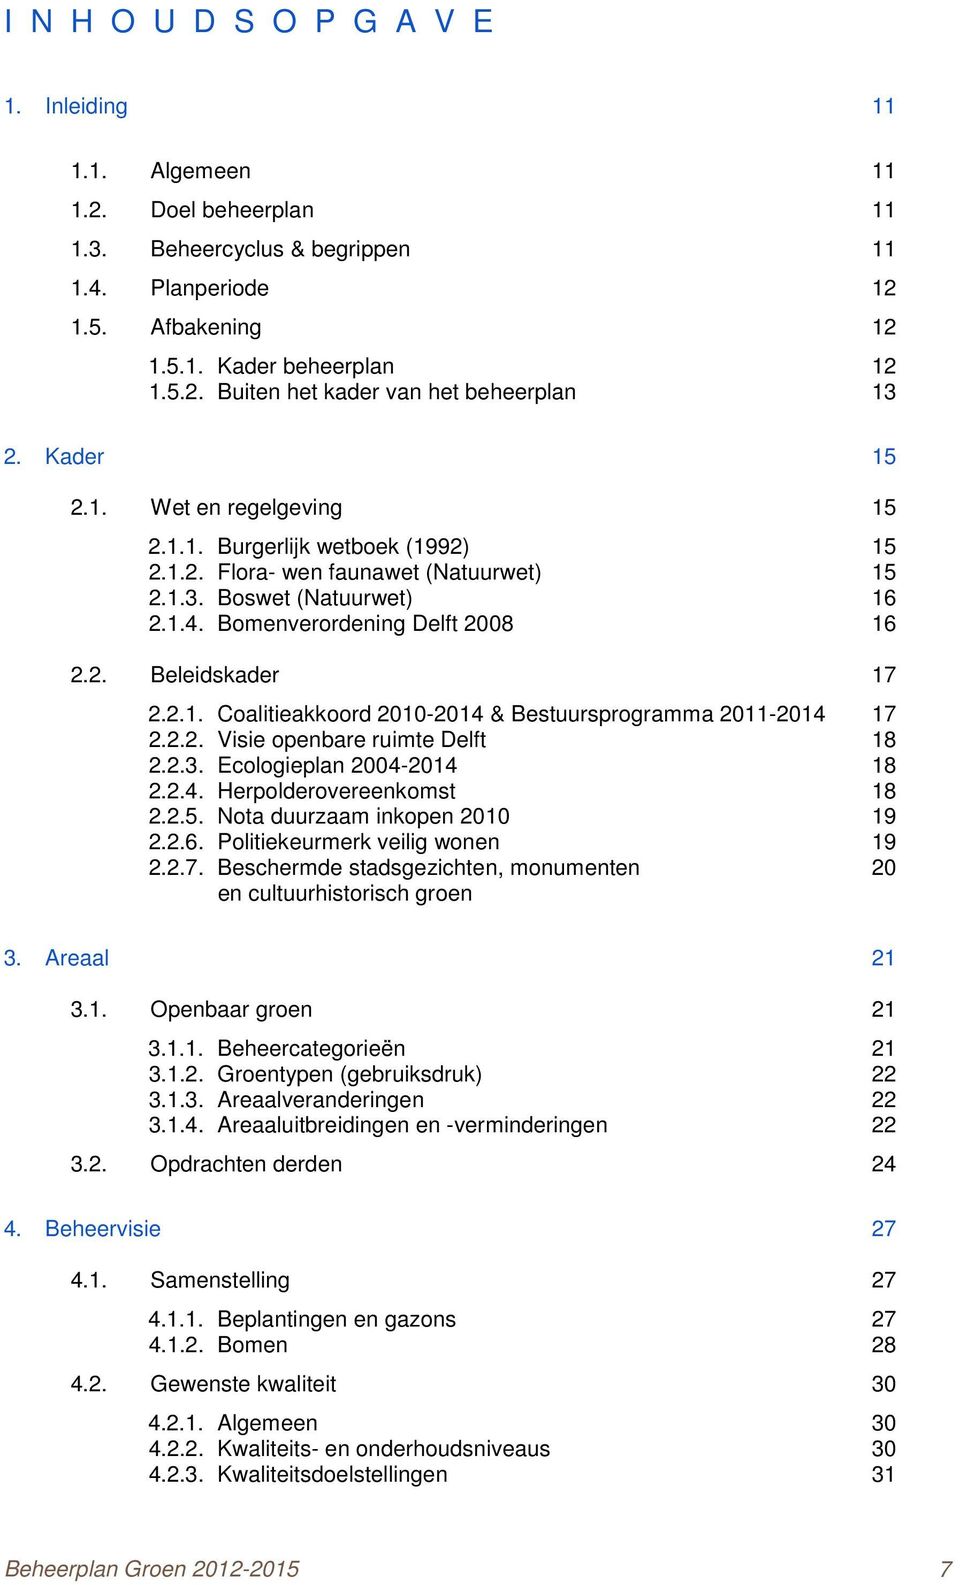 2.1. Coalitieakkoord 2010-2014 & Bestuursprogramma 2011-2014 17 2.2.2. Visie openbare ruimte Delft 18 2.2.3. Ecologieplan 2004-2014 18 2.2.4. Herpolderovereenkomst 18 2.2.5.